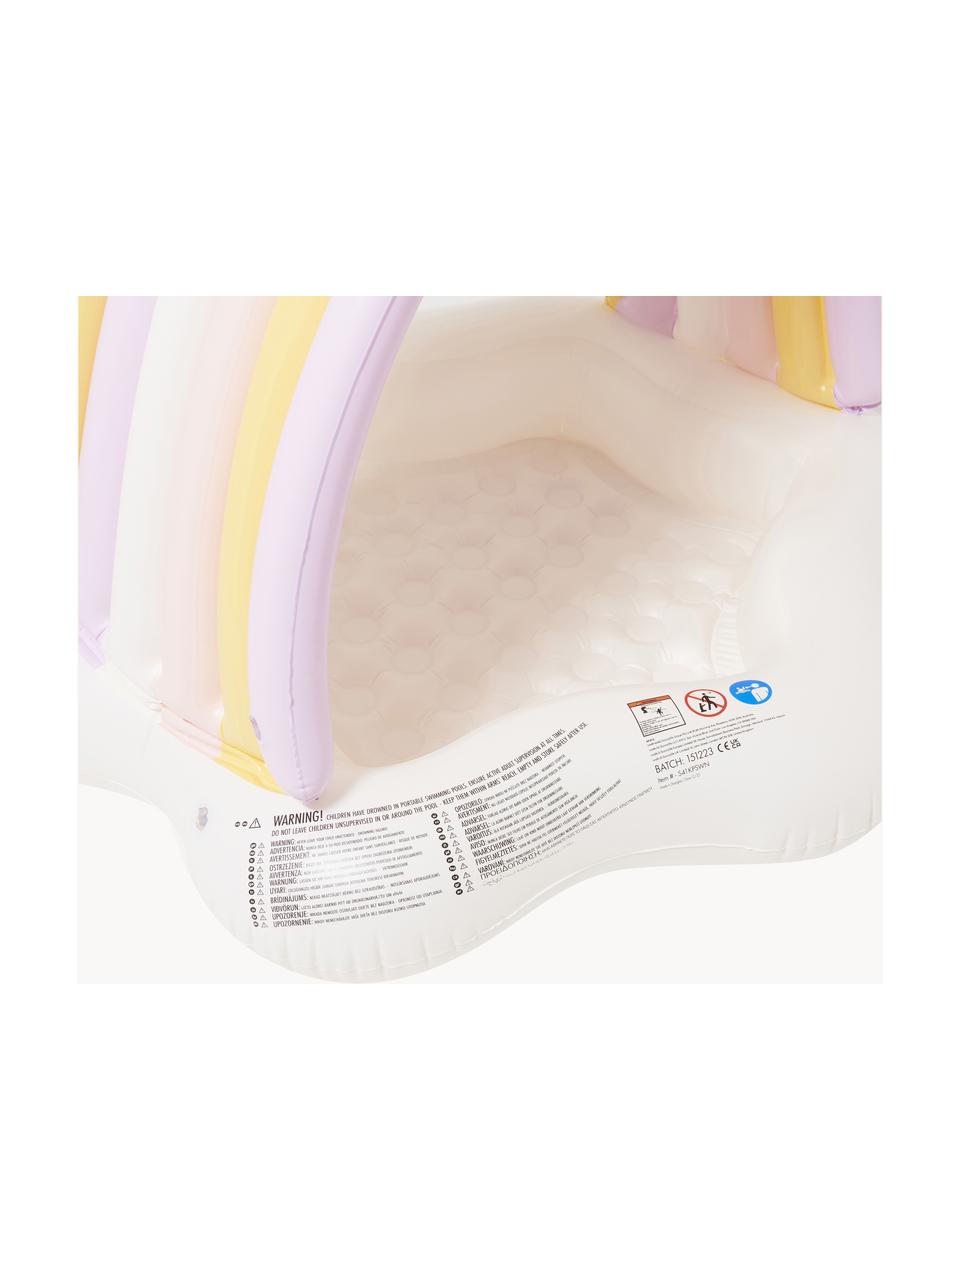 Piscine gonflable pour enfants Princess Swan, Plastique, Blanc cassé, jaune soleil, rose pâle, Ø 120 x haut. 90 cm